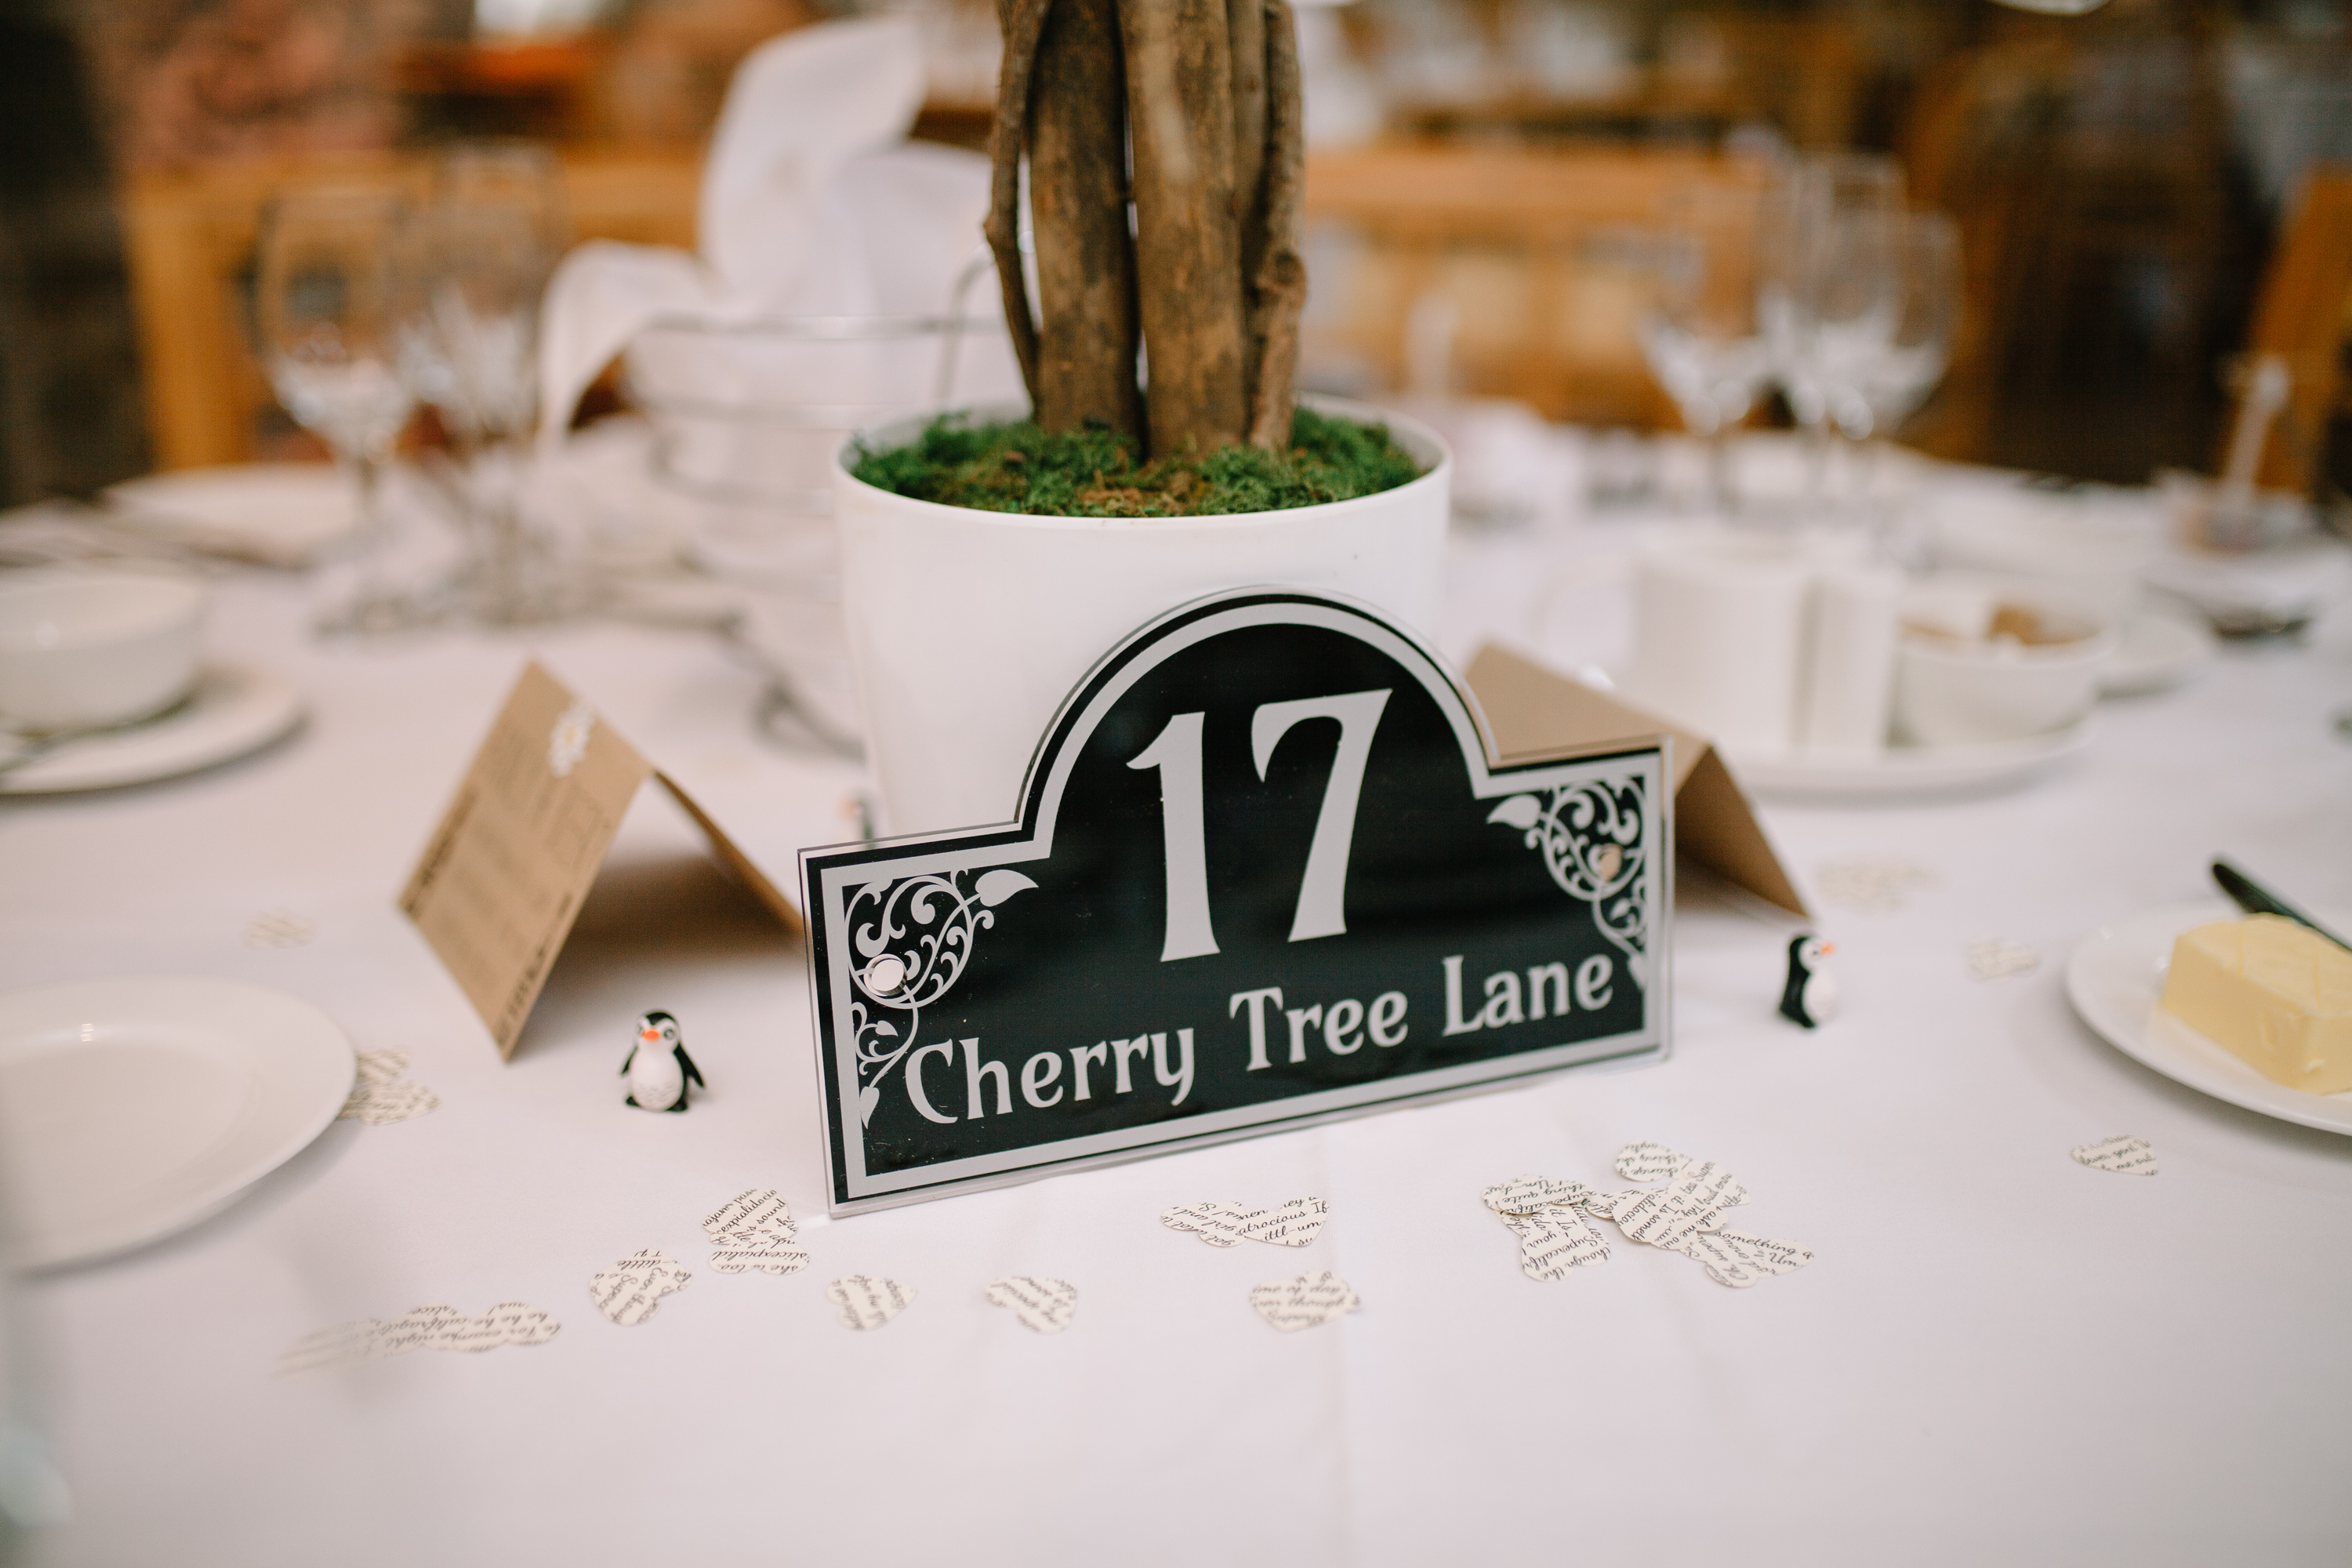 17 Cherry Tree Lane Sign